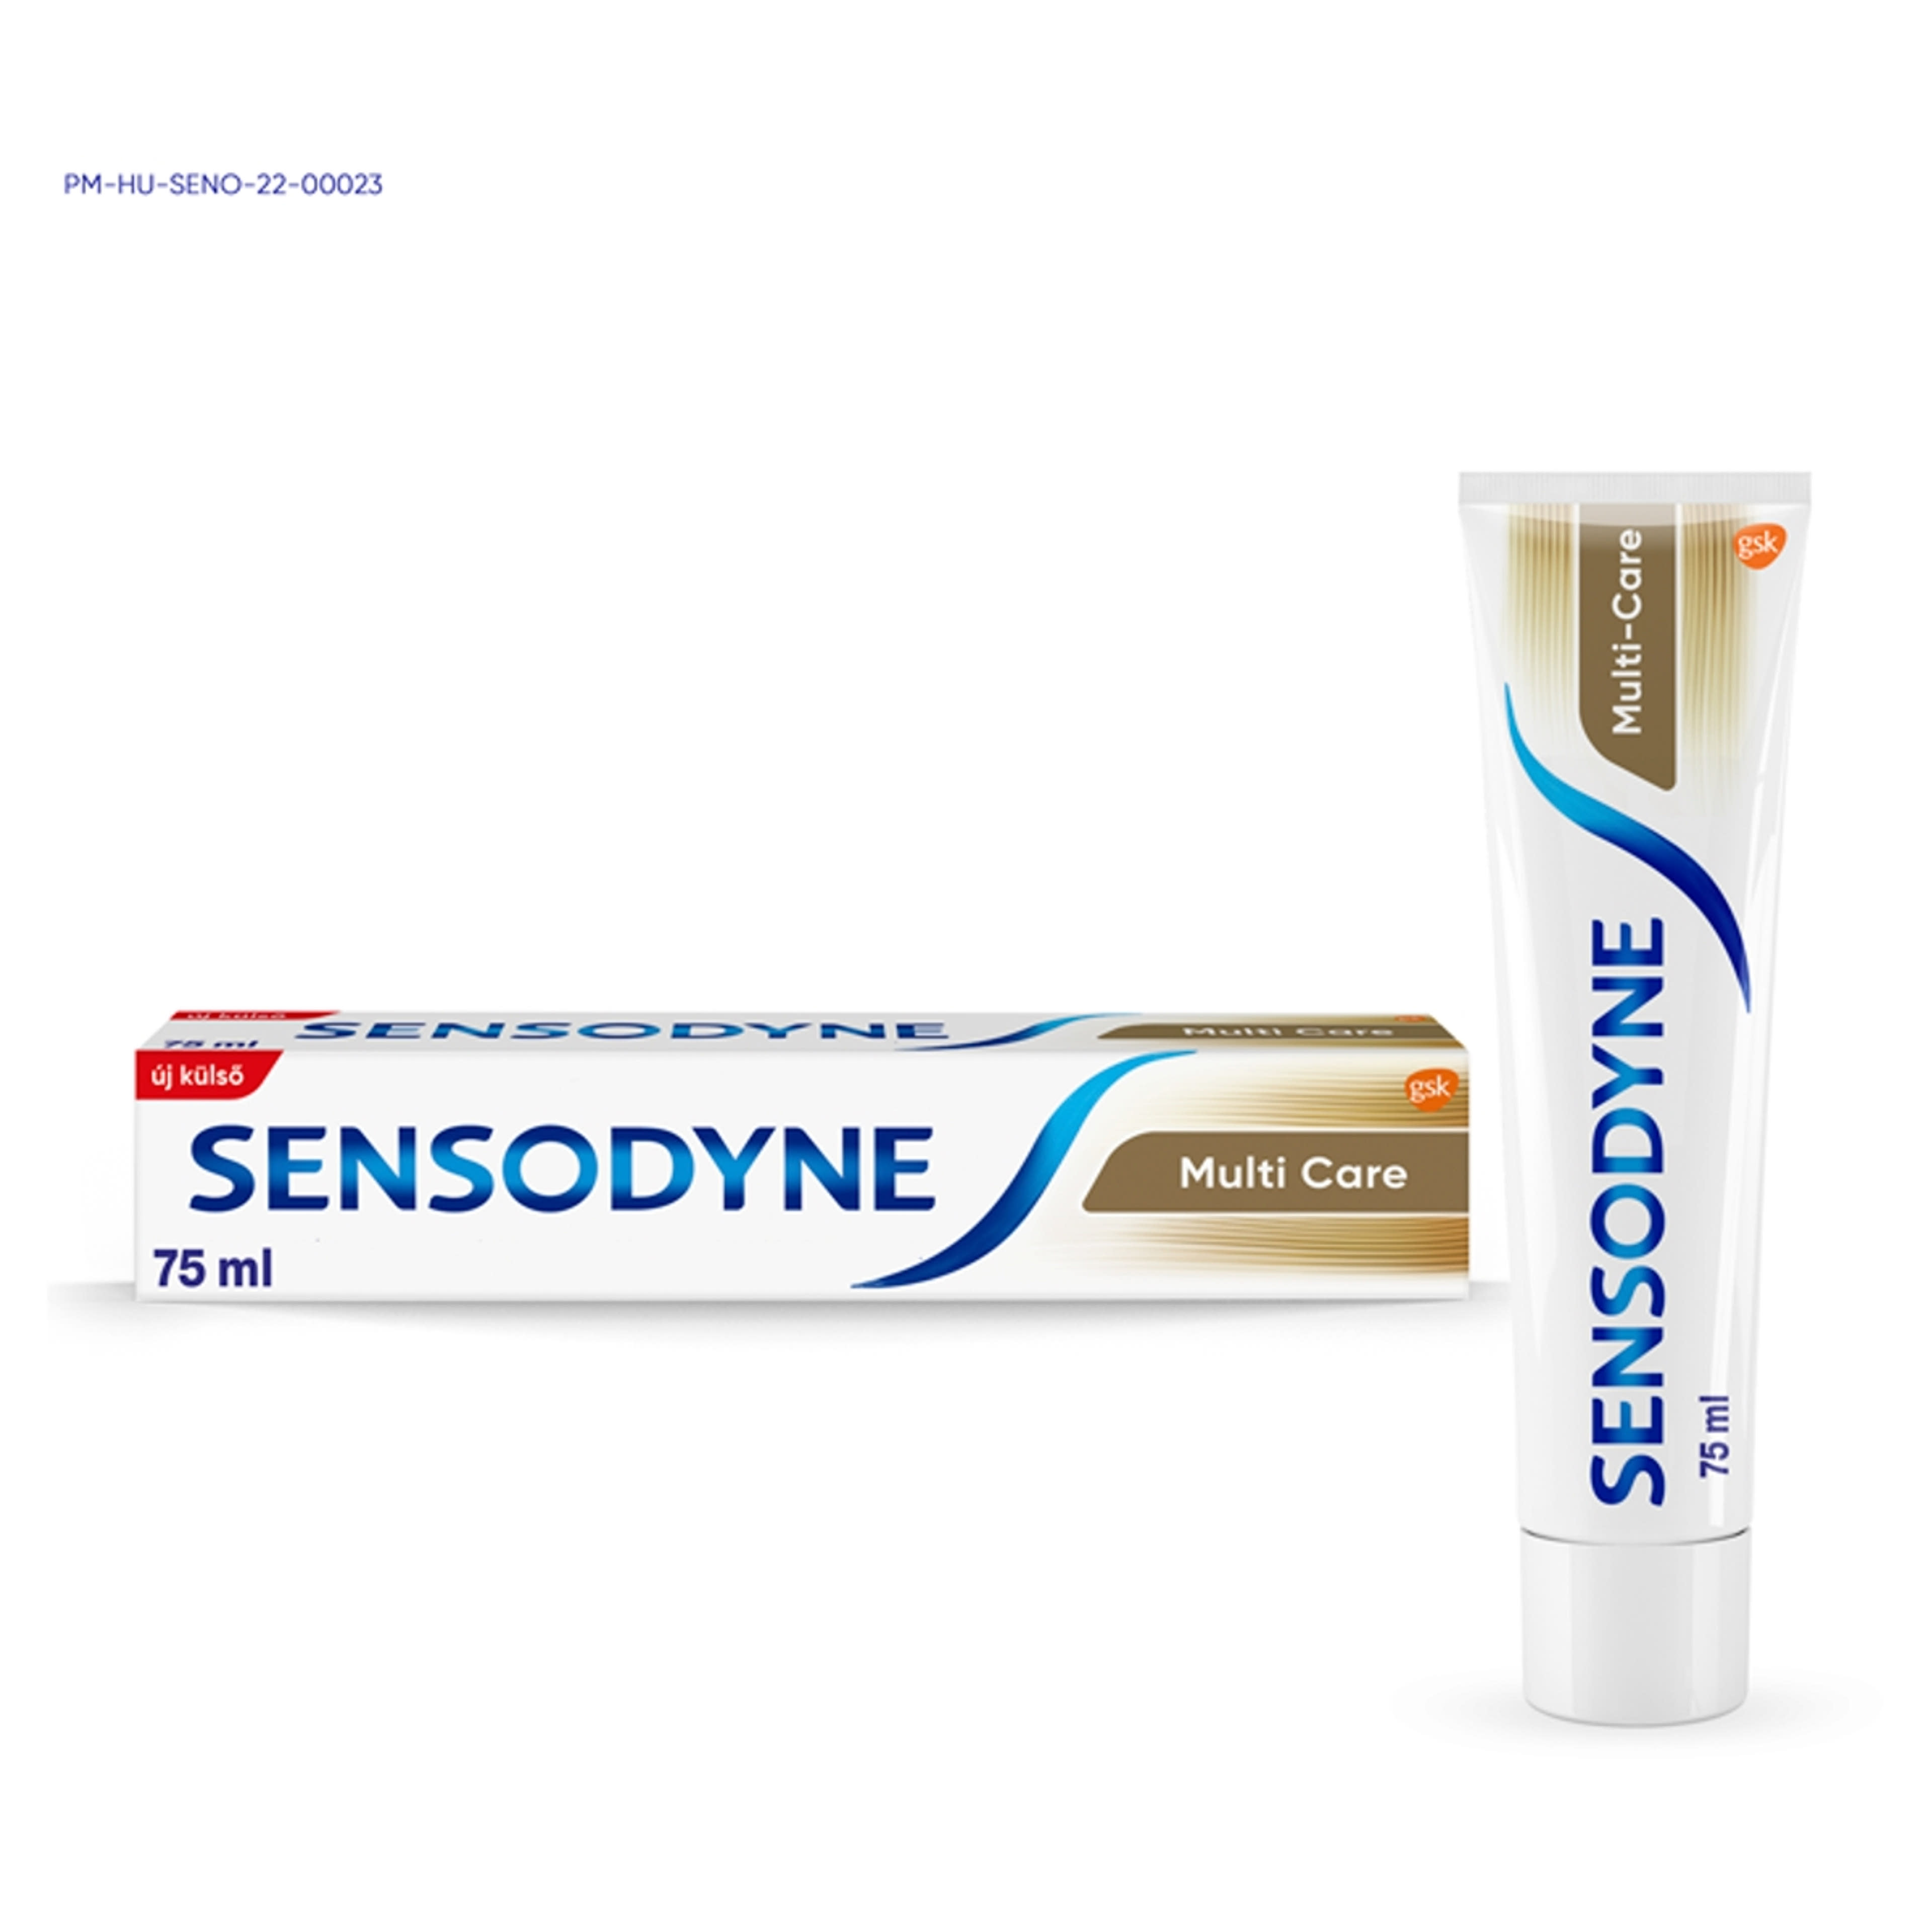 Sensodyne Multi Care fogkrém Trio pack 3 db - 75 ml-2